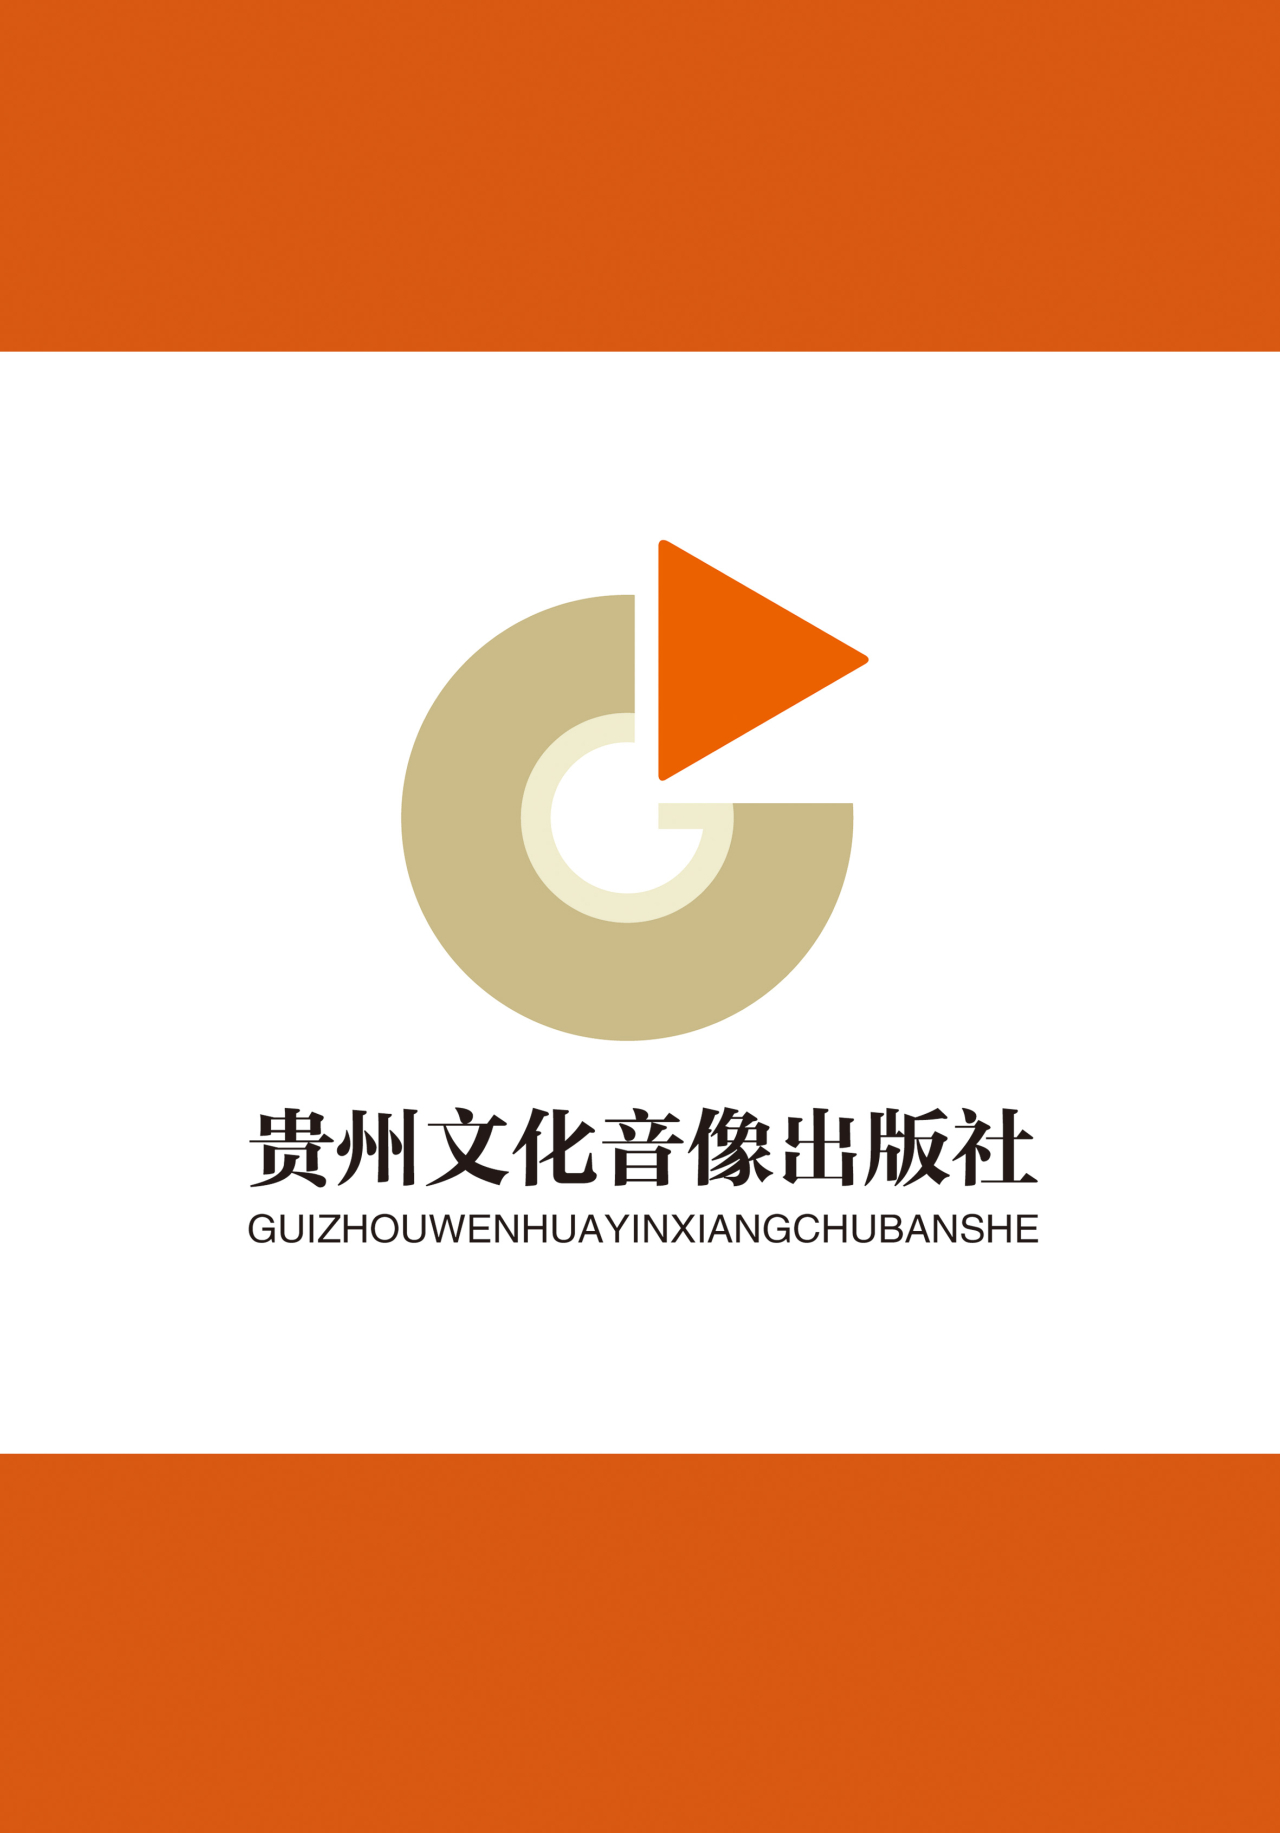 贵州文化音像出版社